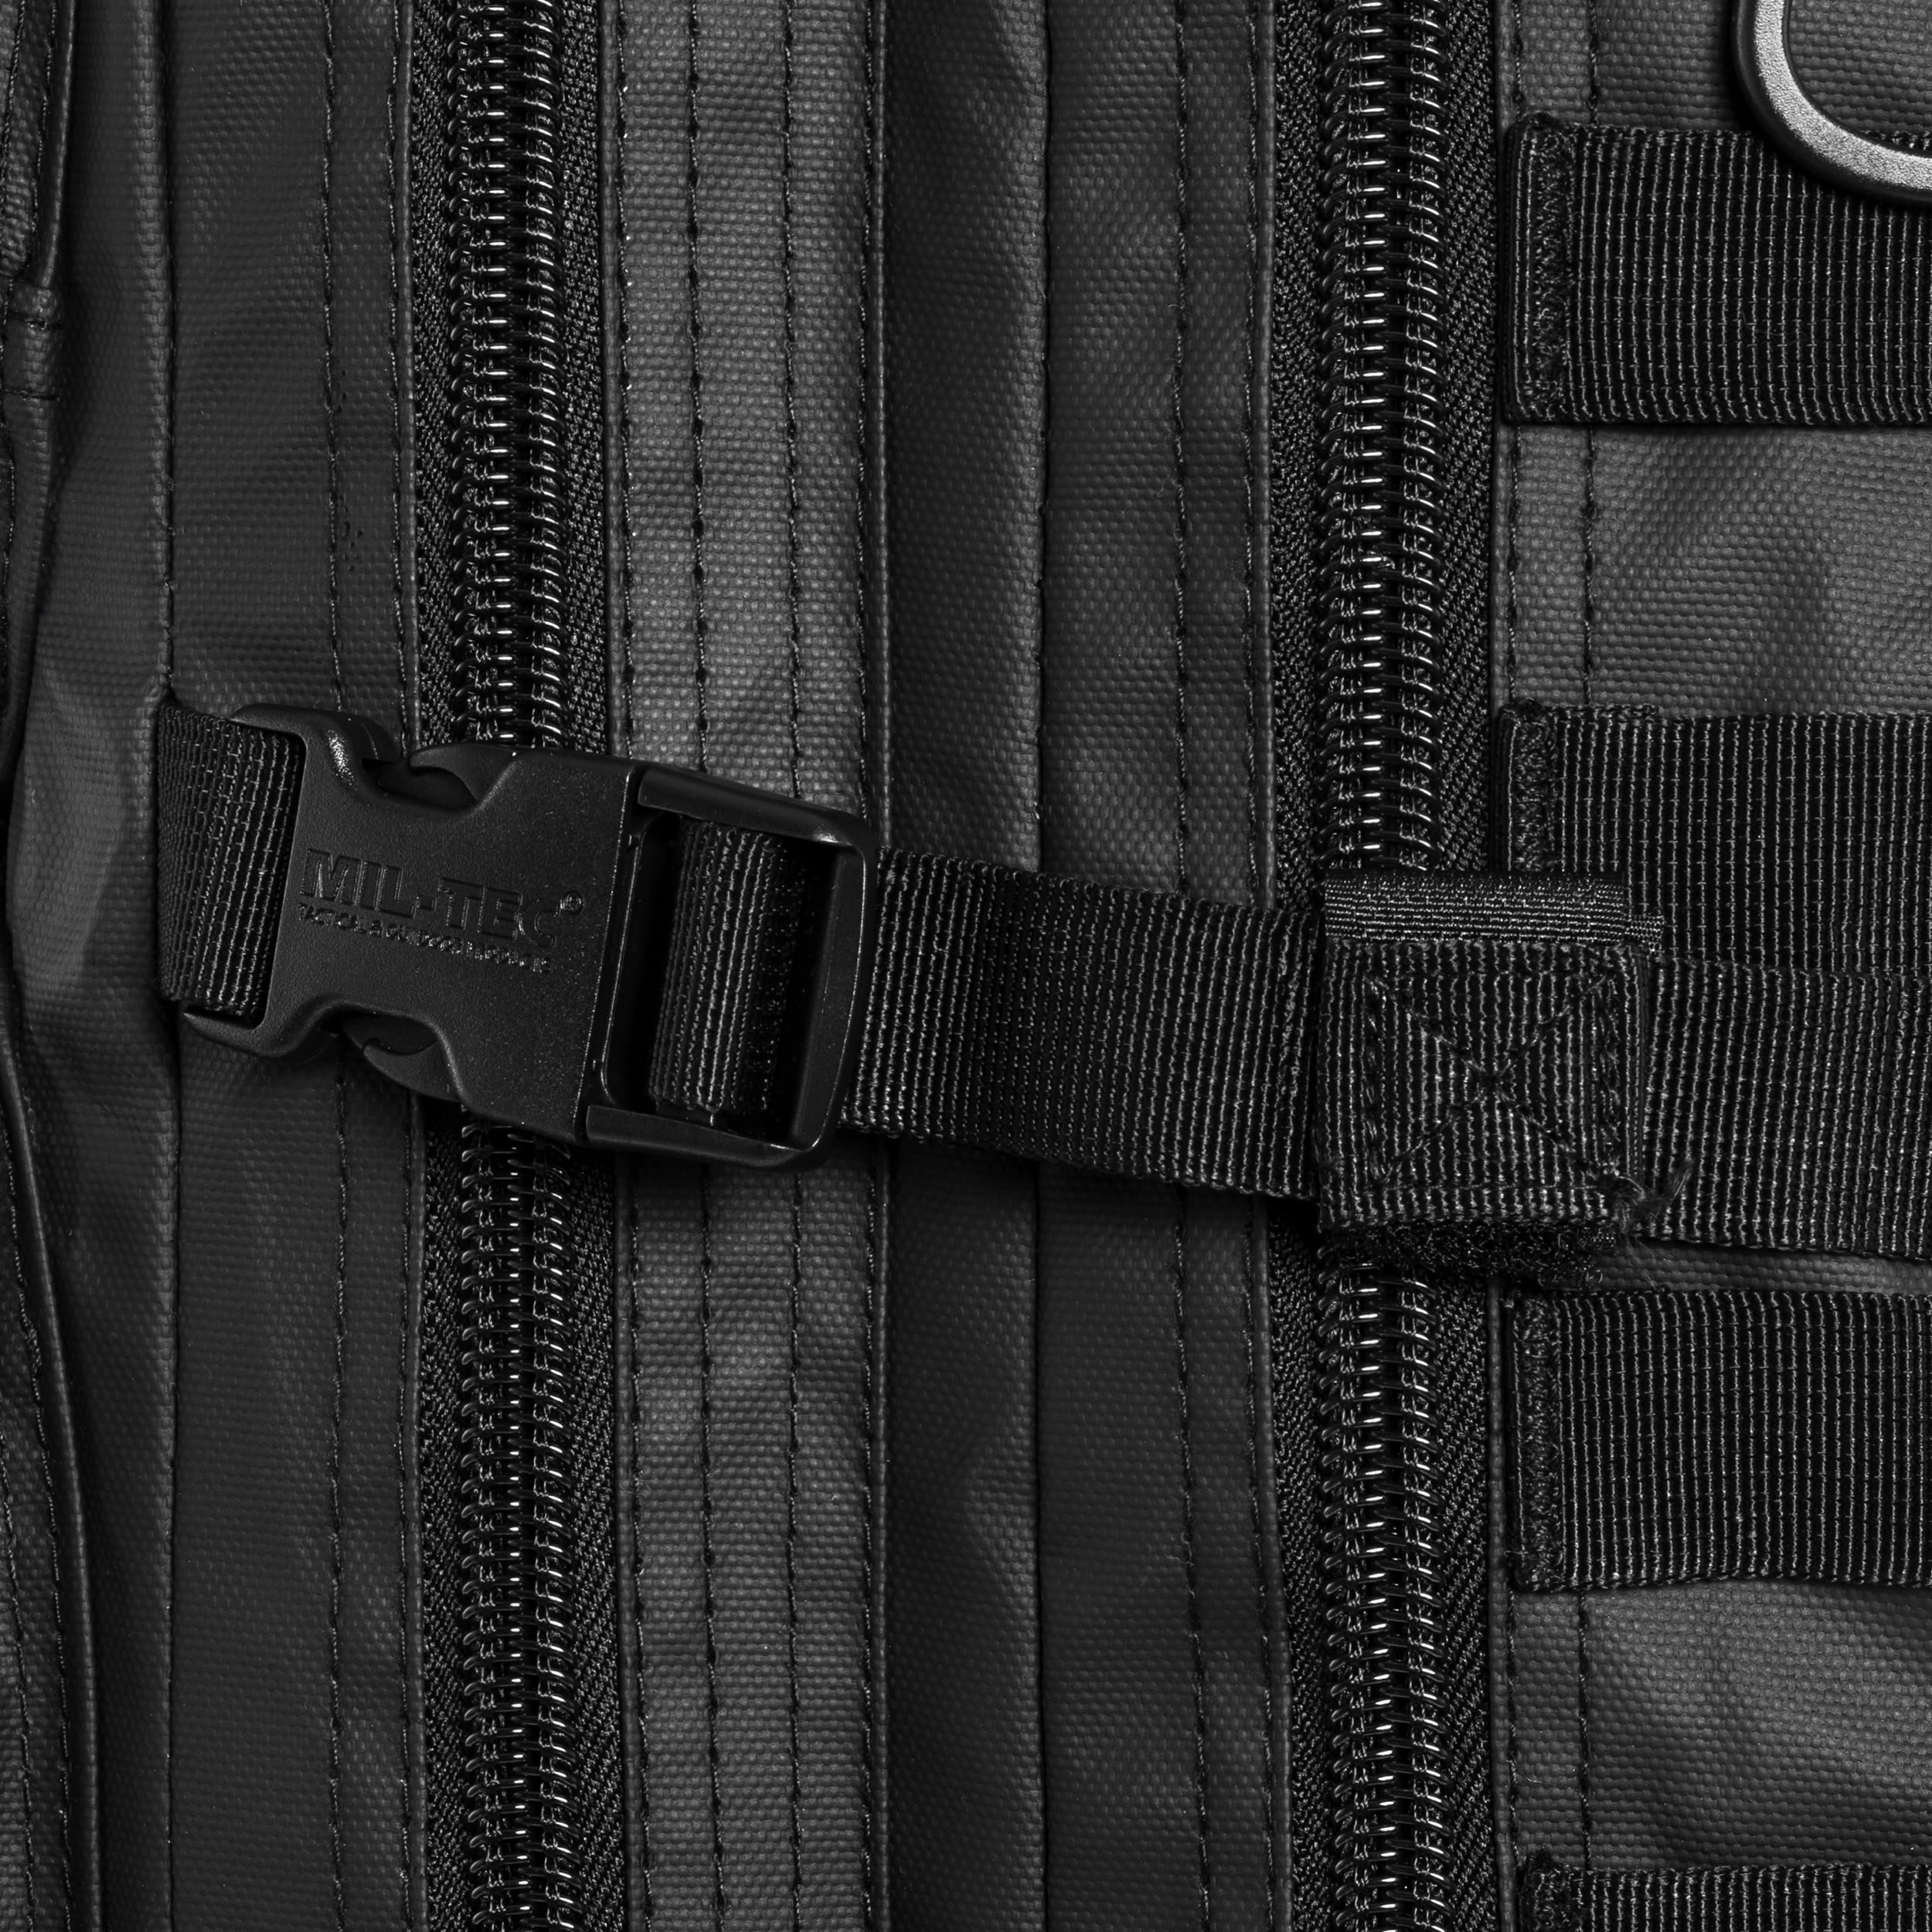 Рюкзак через плече Mil-Tec One Strap Assault 25 л - Tactical Black